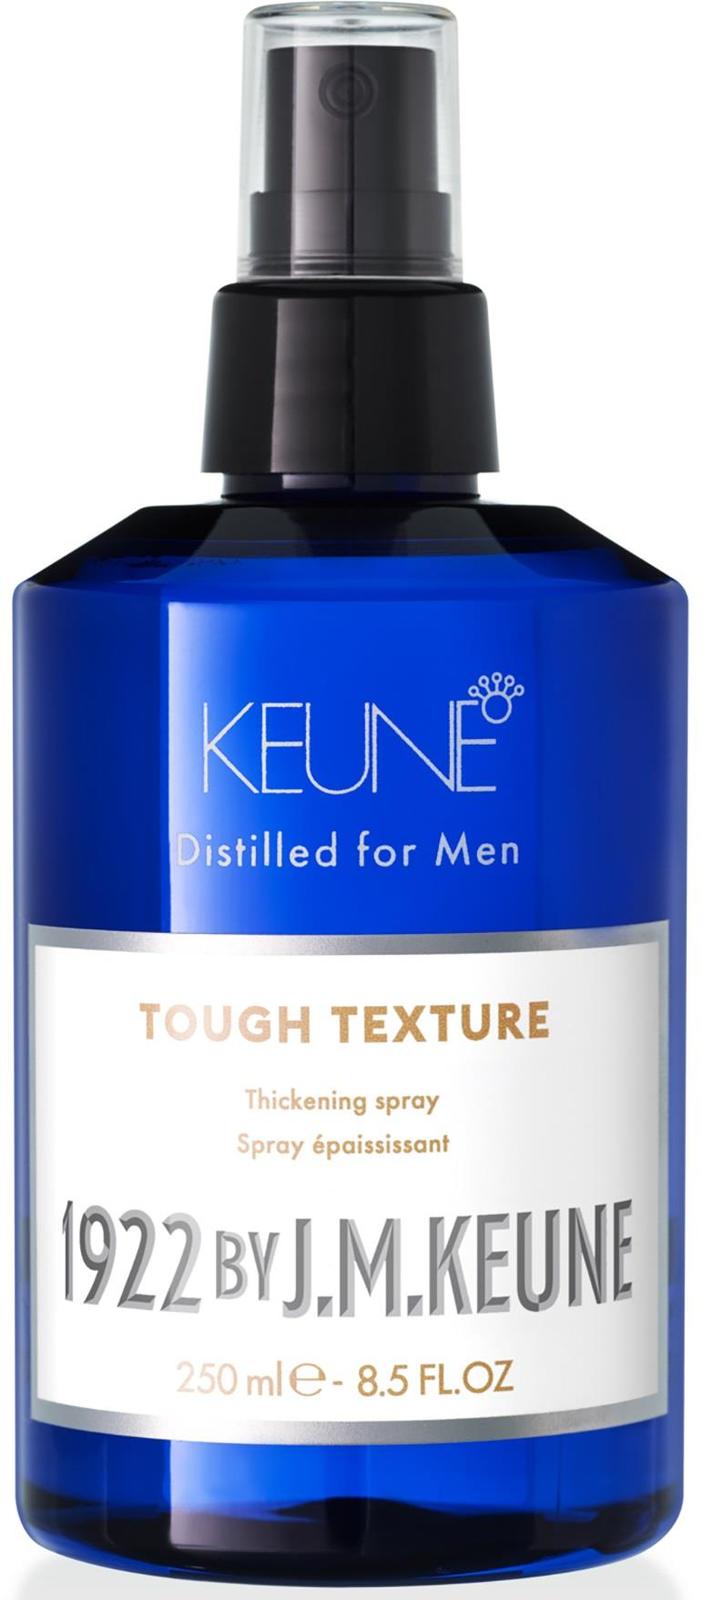 Keune 1922 by J.M. Keune Tough Texture 8.5oz - $31.50